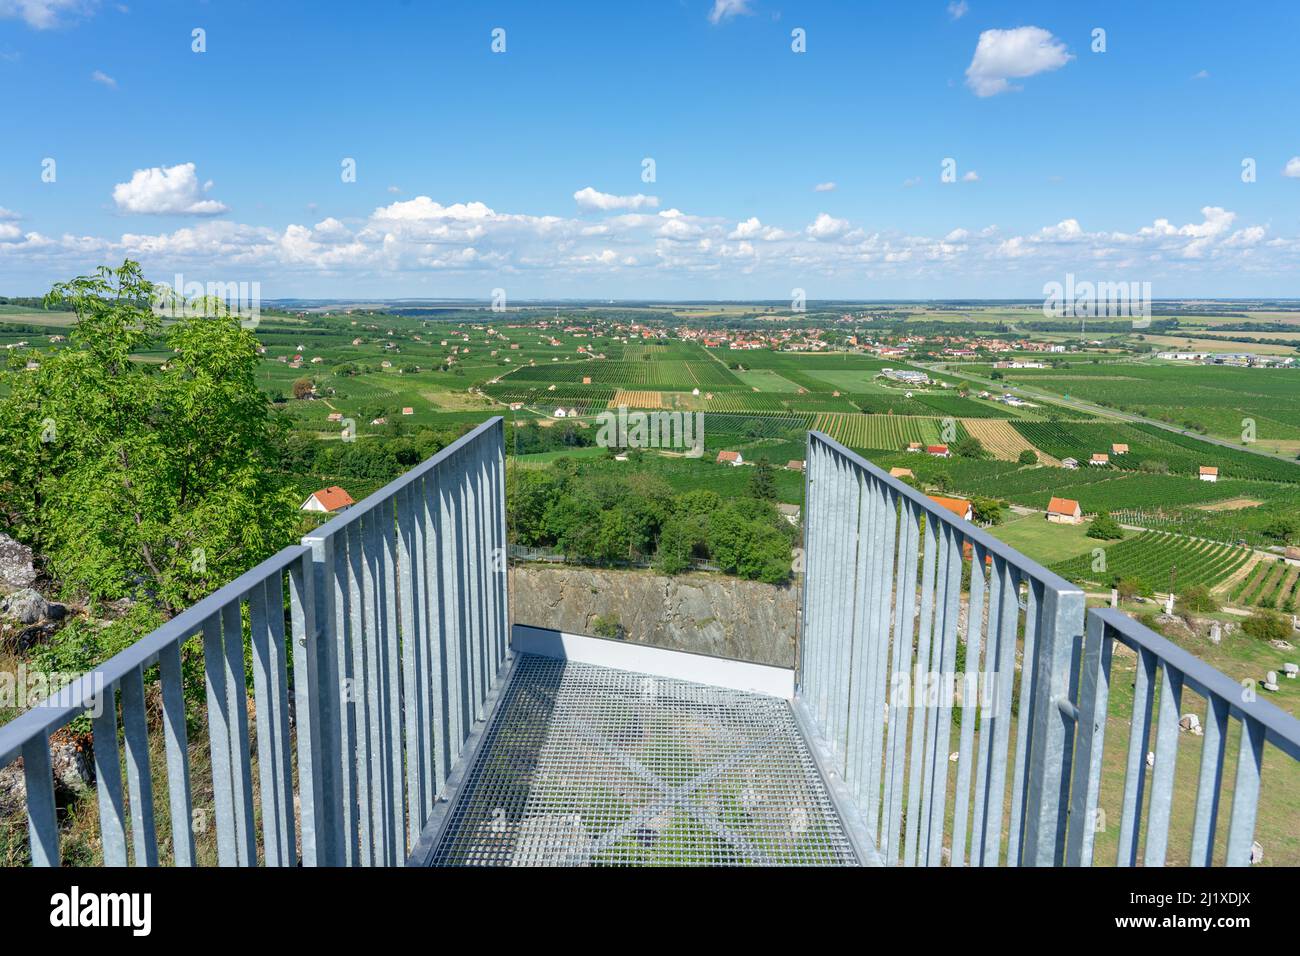 pont de point de vue d'observation de la promenade du chemin arial au-dessus du parc de ststststststststststue Nagyharsany depuis Szarsomlyo Banque D'Images